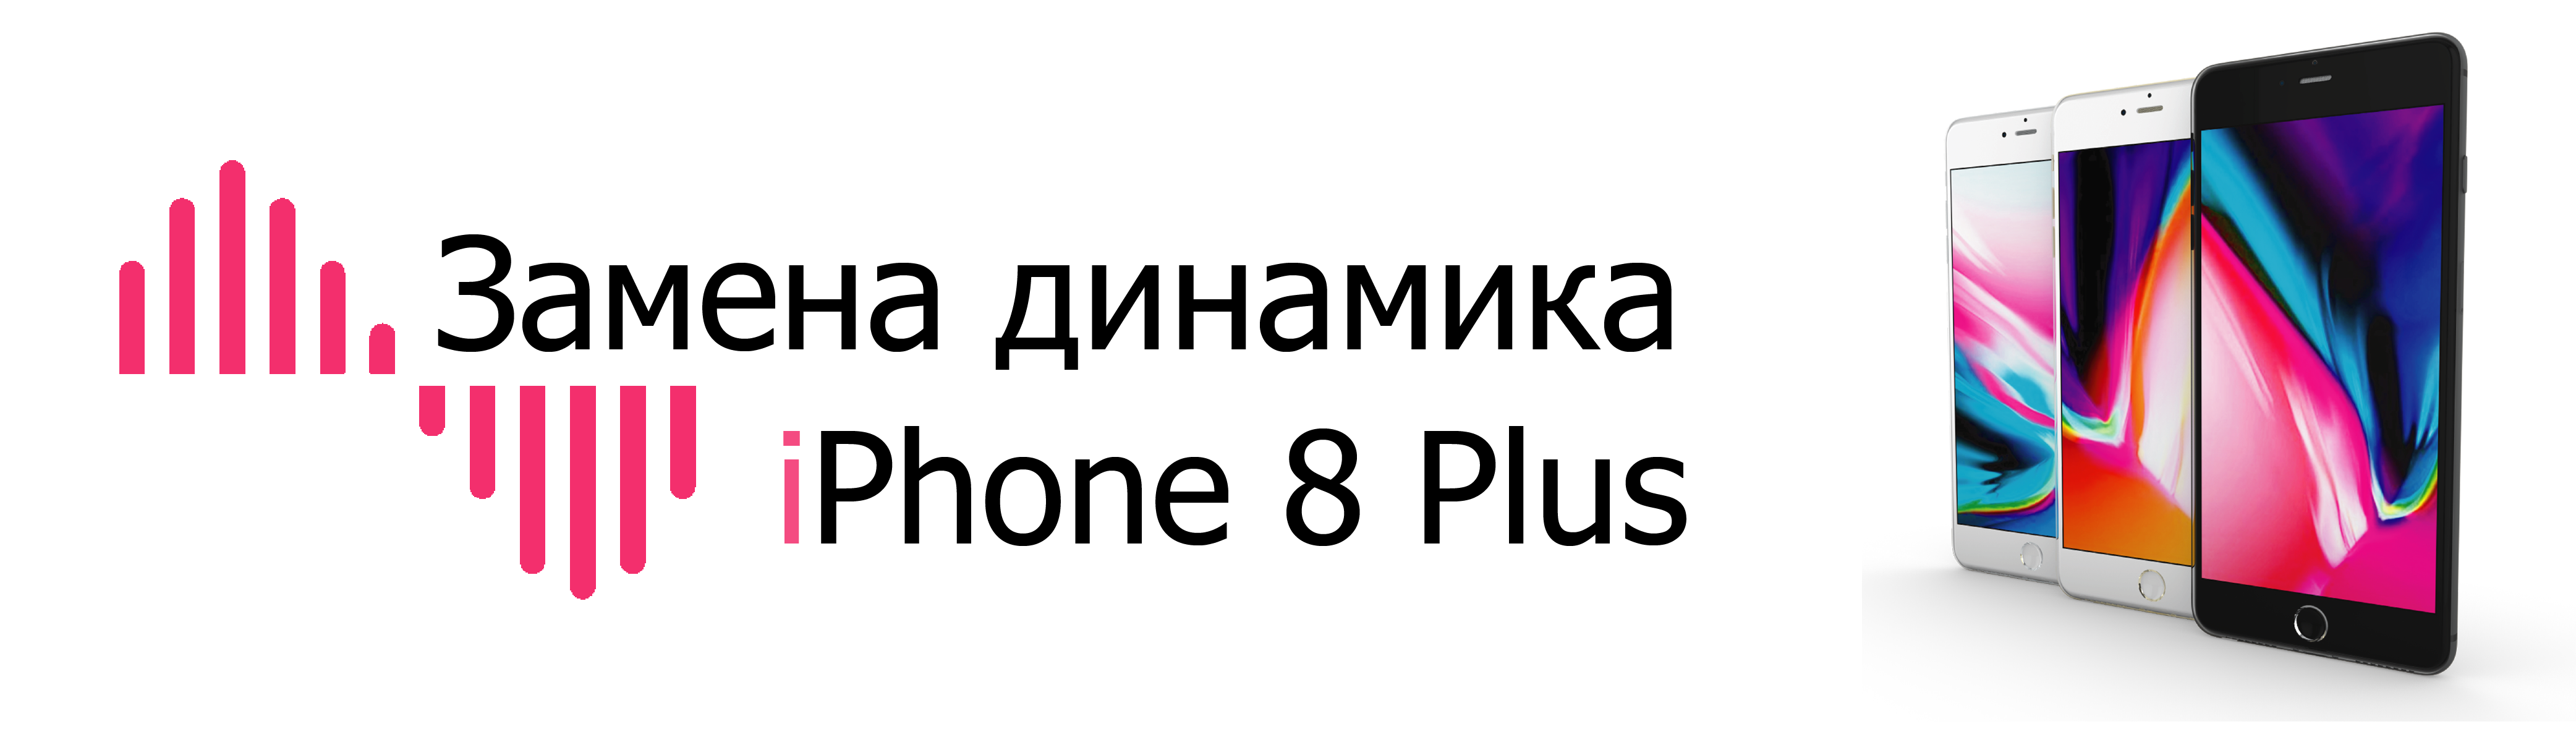 замена динамика iphone 8 plus